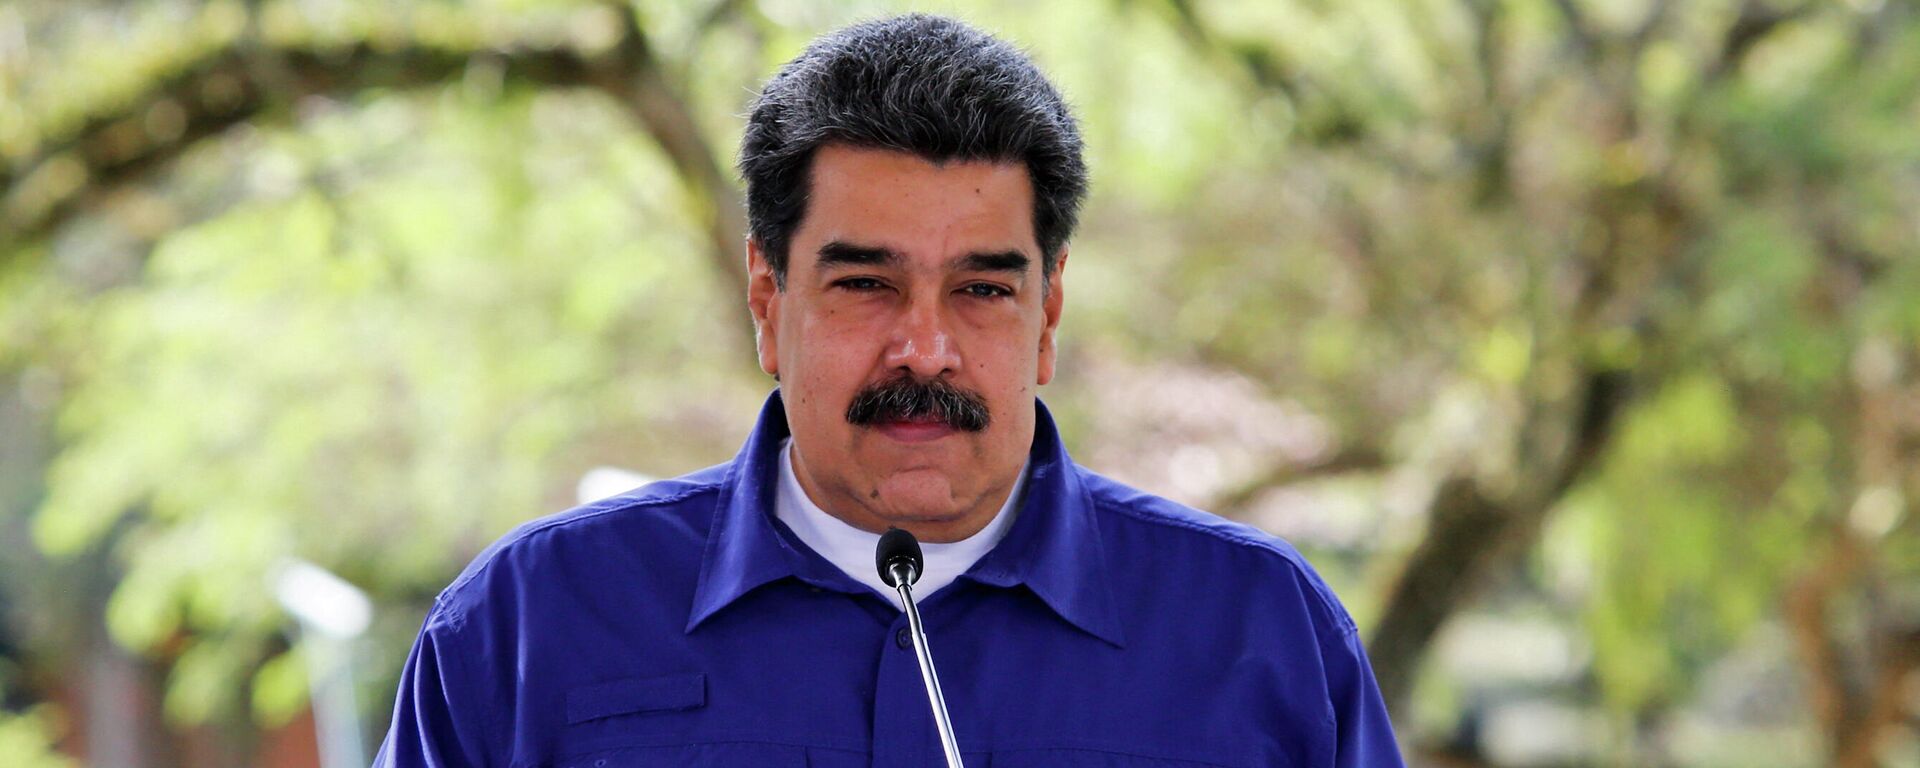 Nicolás Maduro, presidente de Venezuela - Sputnik Mundo, 1920, 18.06.2021